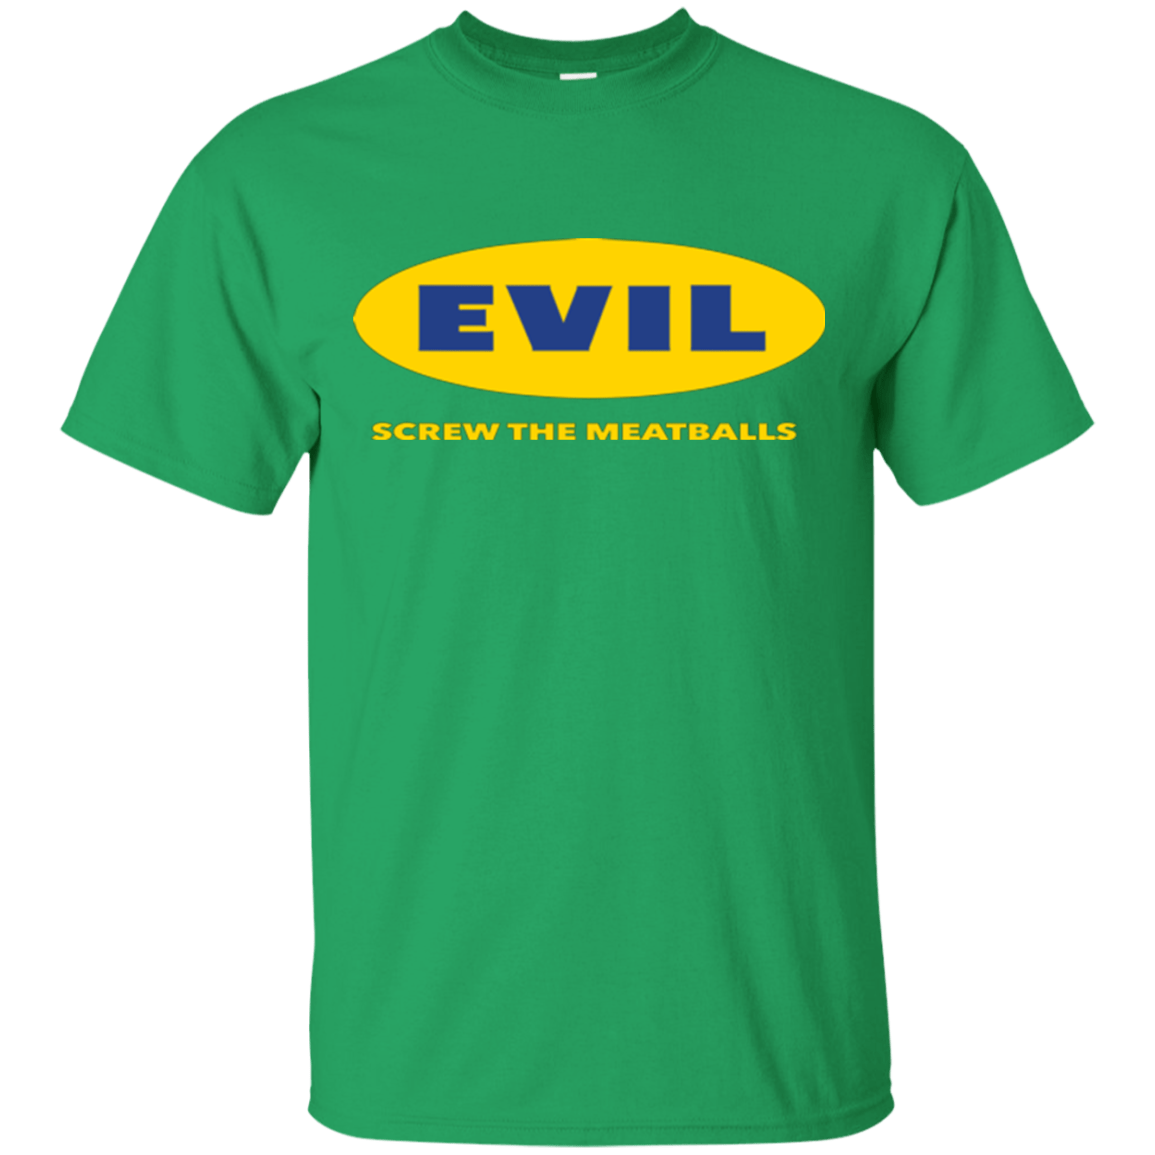 T-Shirts Irish Green / Small EVIL Screw The Meatballs T-Shirt